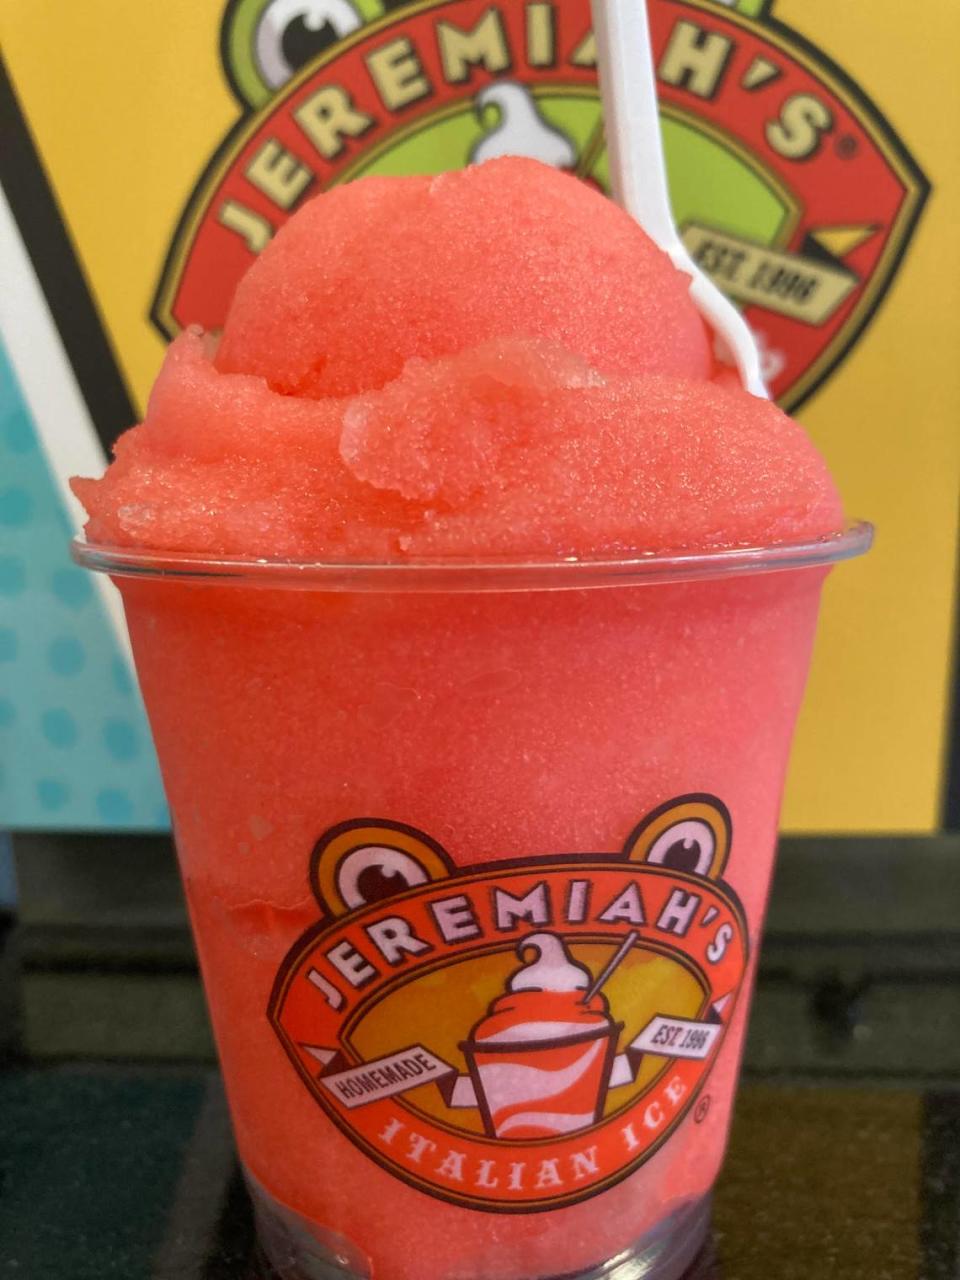 A strawberry lemon Italian Ice at Jeremiah’s Italian Ice.